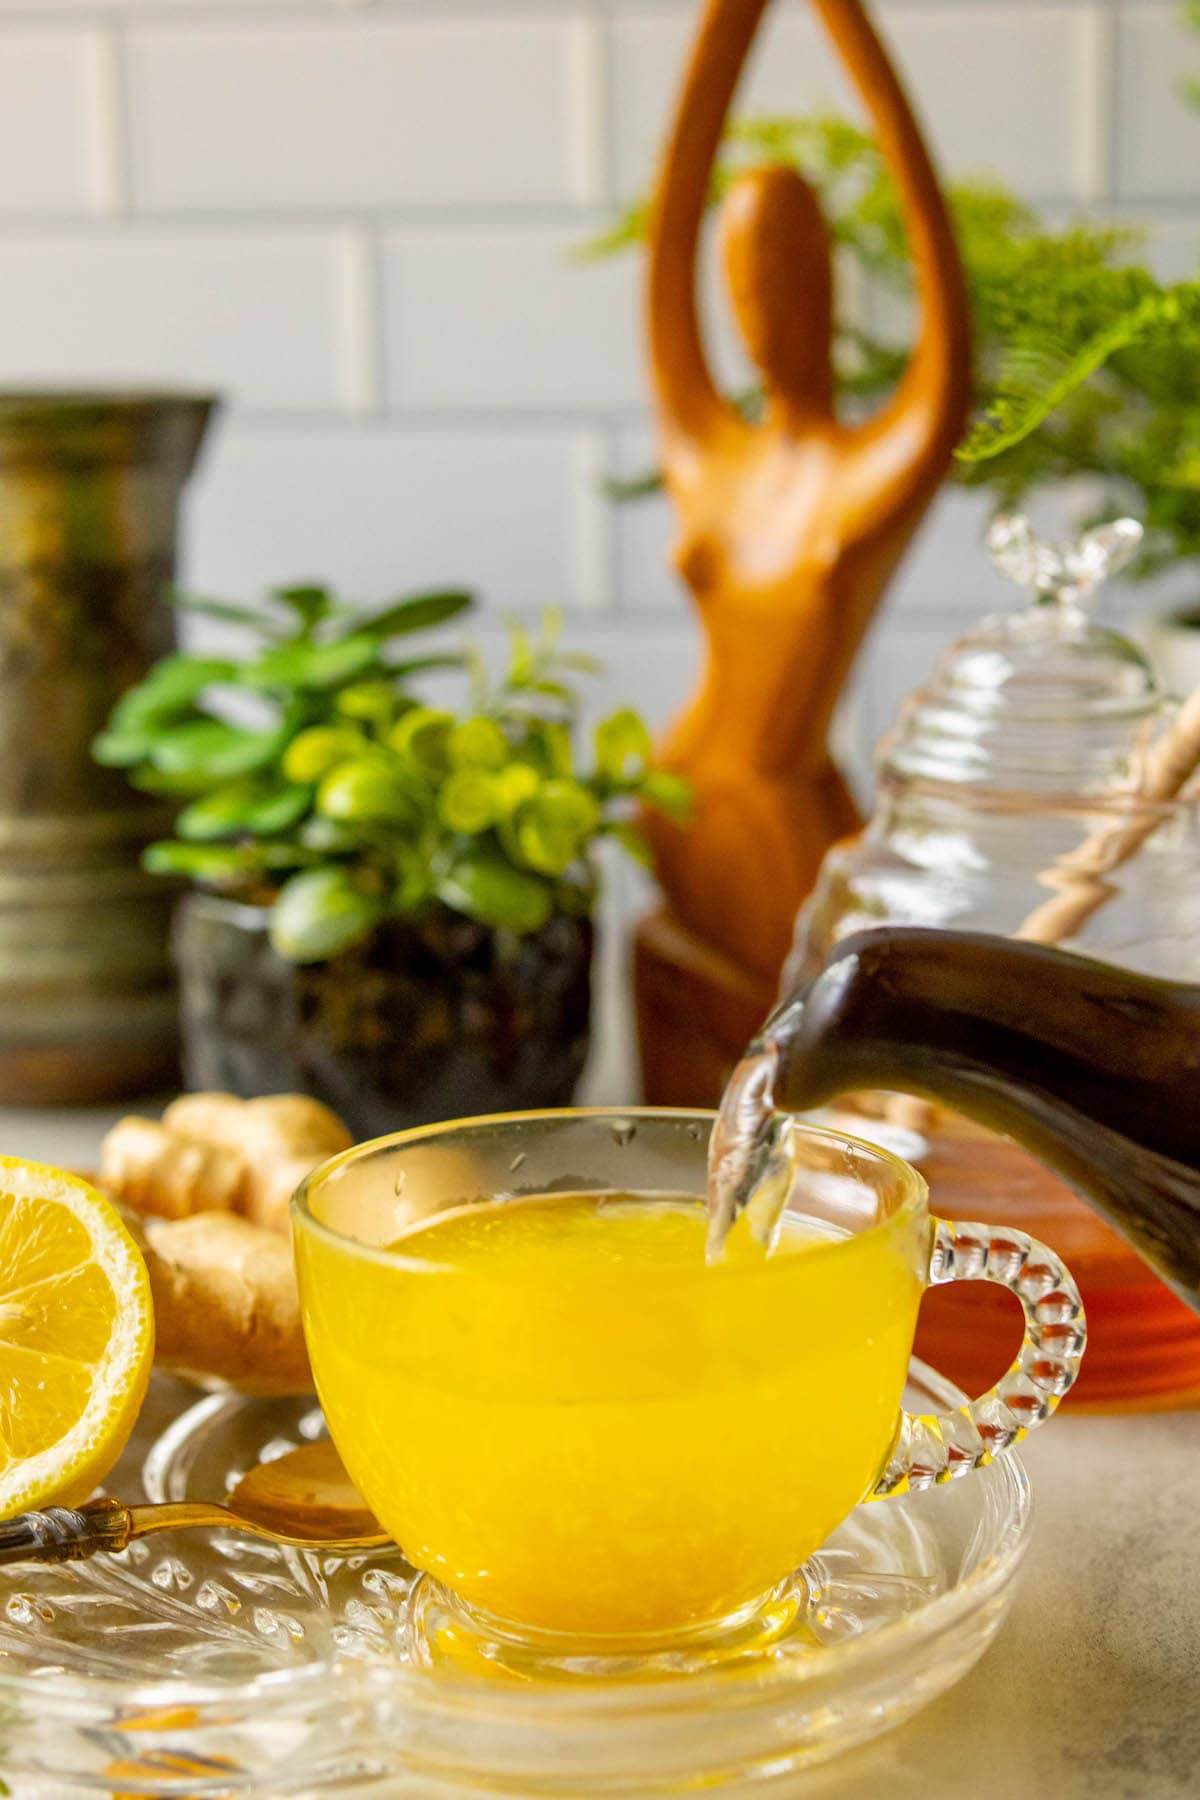 cup of bright orange tea in a glass mug